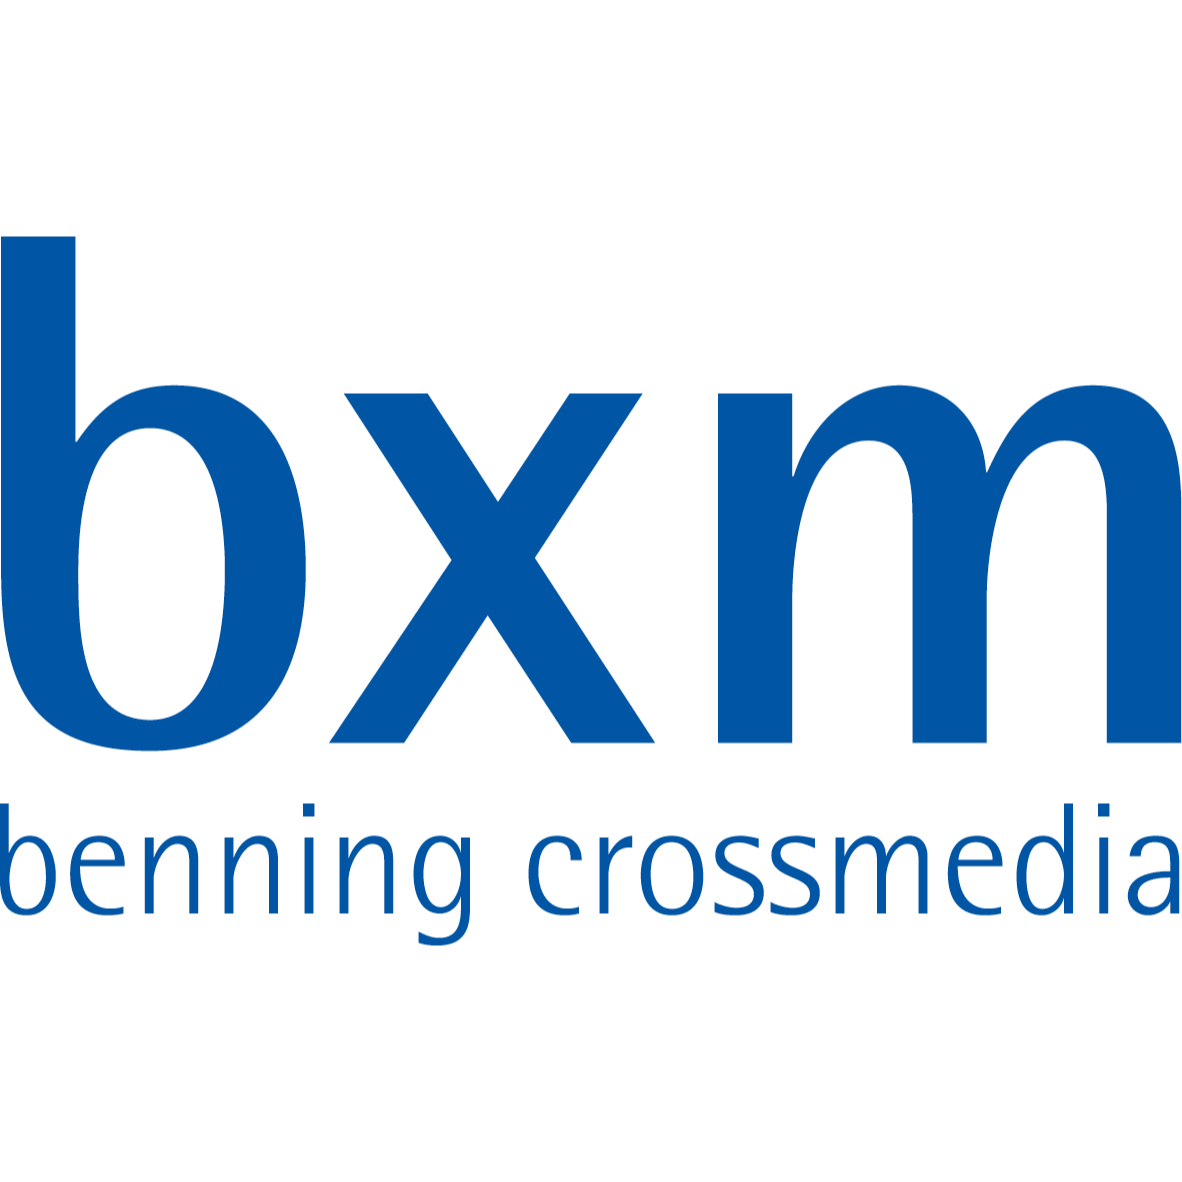 bxm - benning crossmedia - Ihre Experten für Marketing und Werbung in Kaarst in Kaarst - Logo